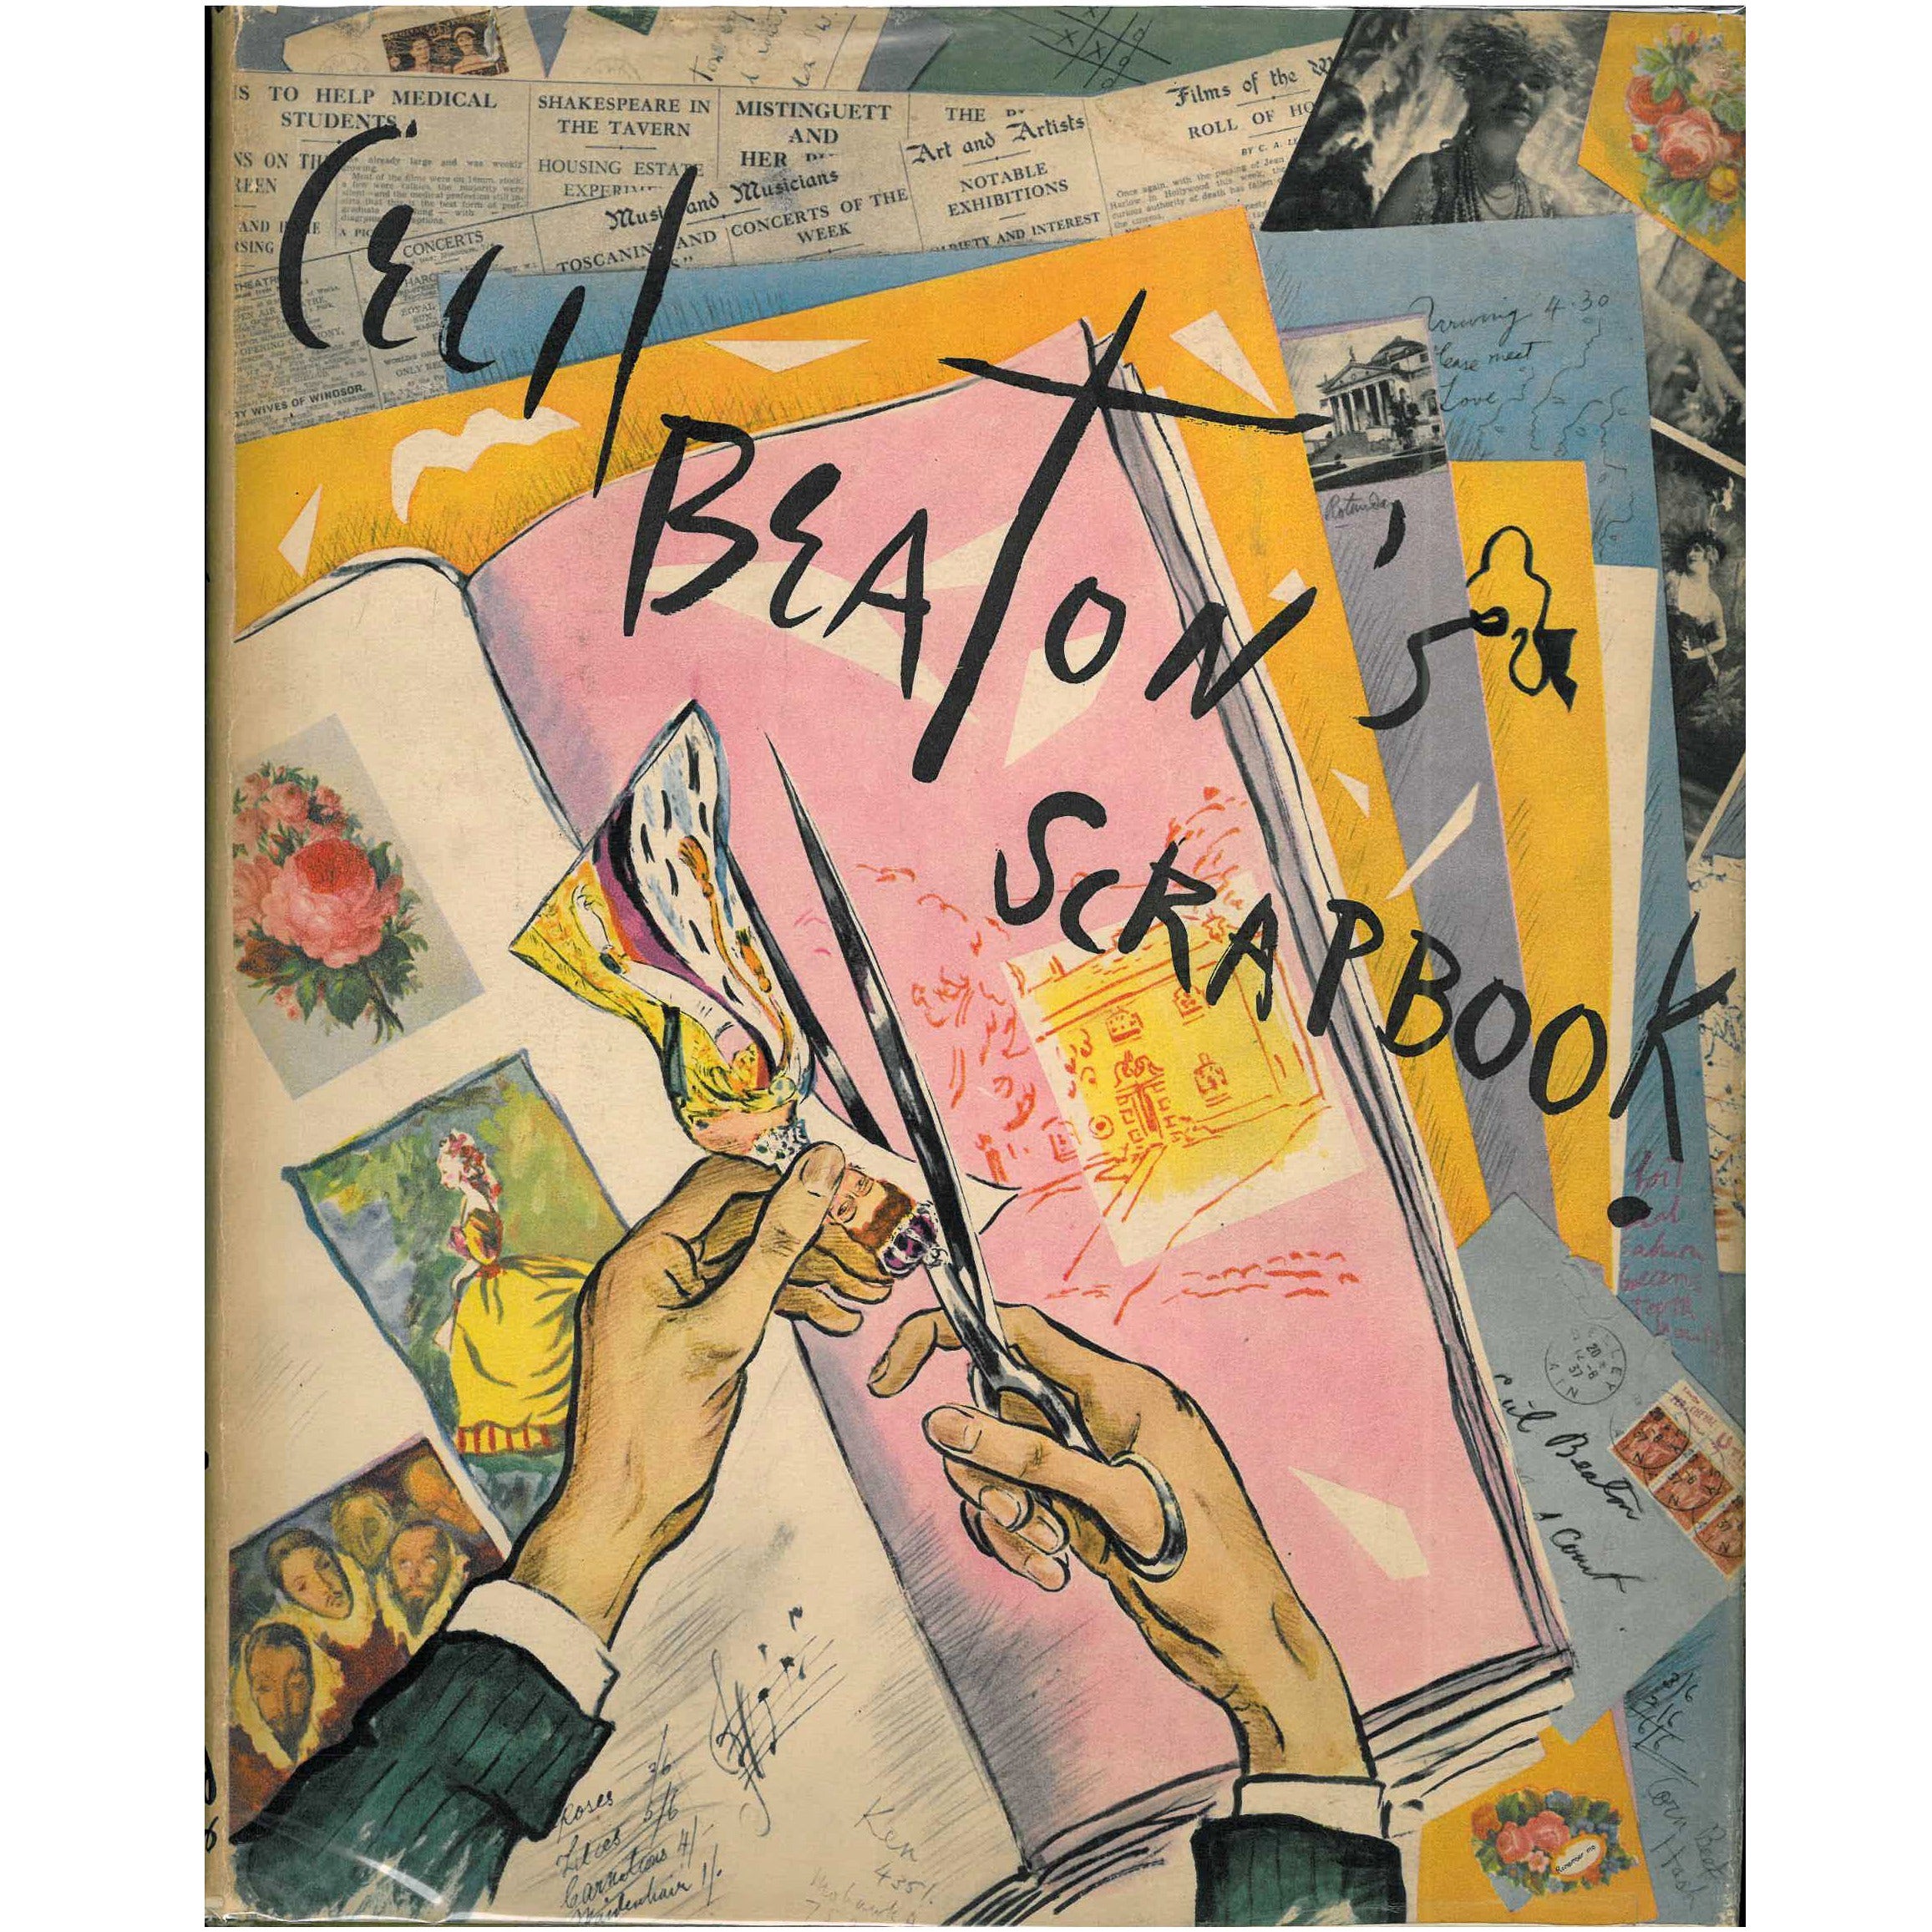 Le livre de Cecil Beaton (livre)